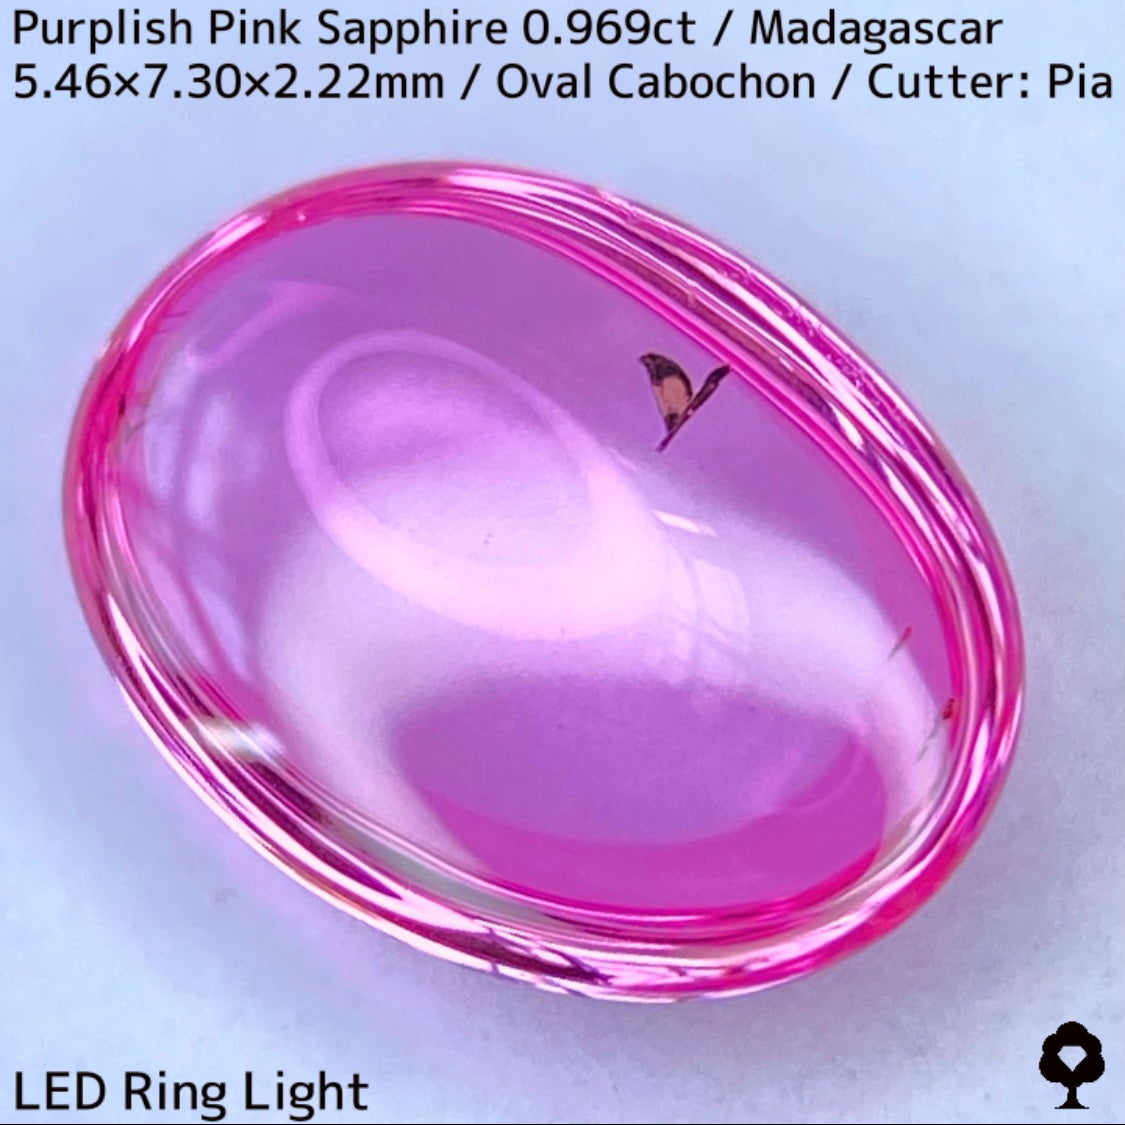 マダガスカル産ピンクサファイア0.969ct★美しい石質の美ピンクに音符のような蝶のようなインクルが可愛い